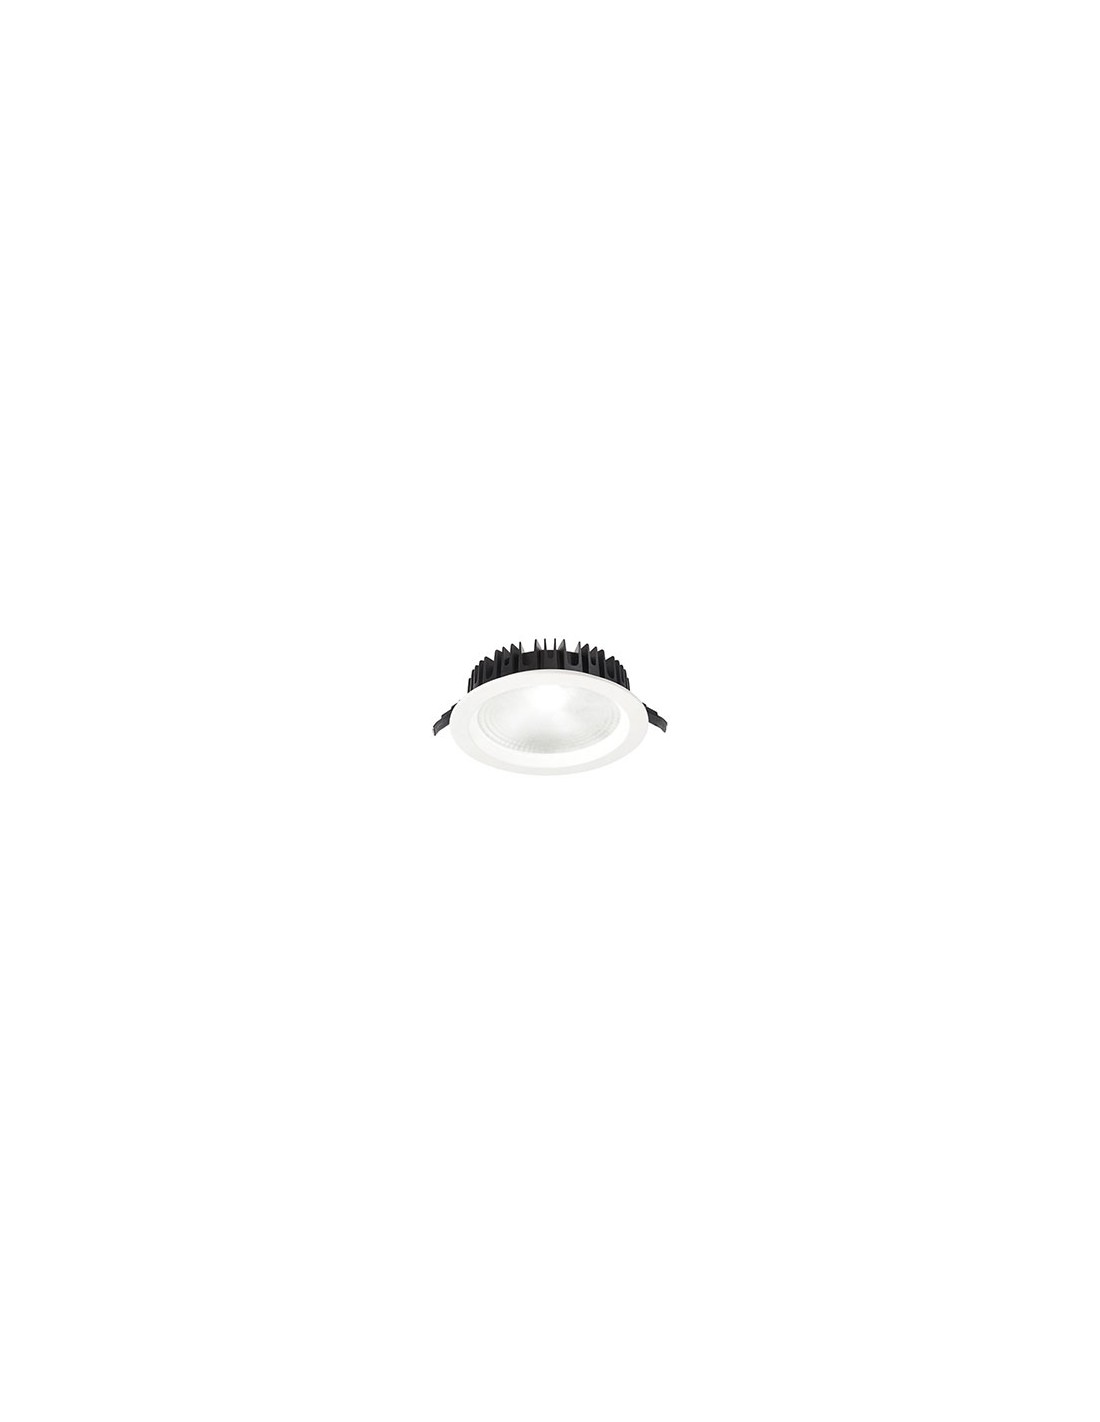 Faretto incasso bianco e nero led - Gea Luce - Faretti - Progetti in Luce